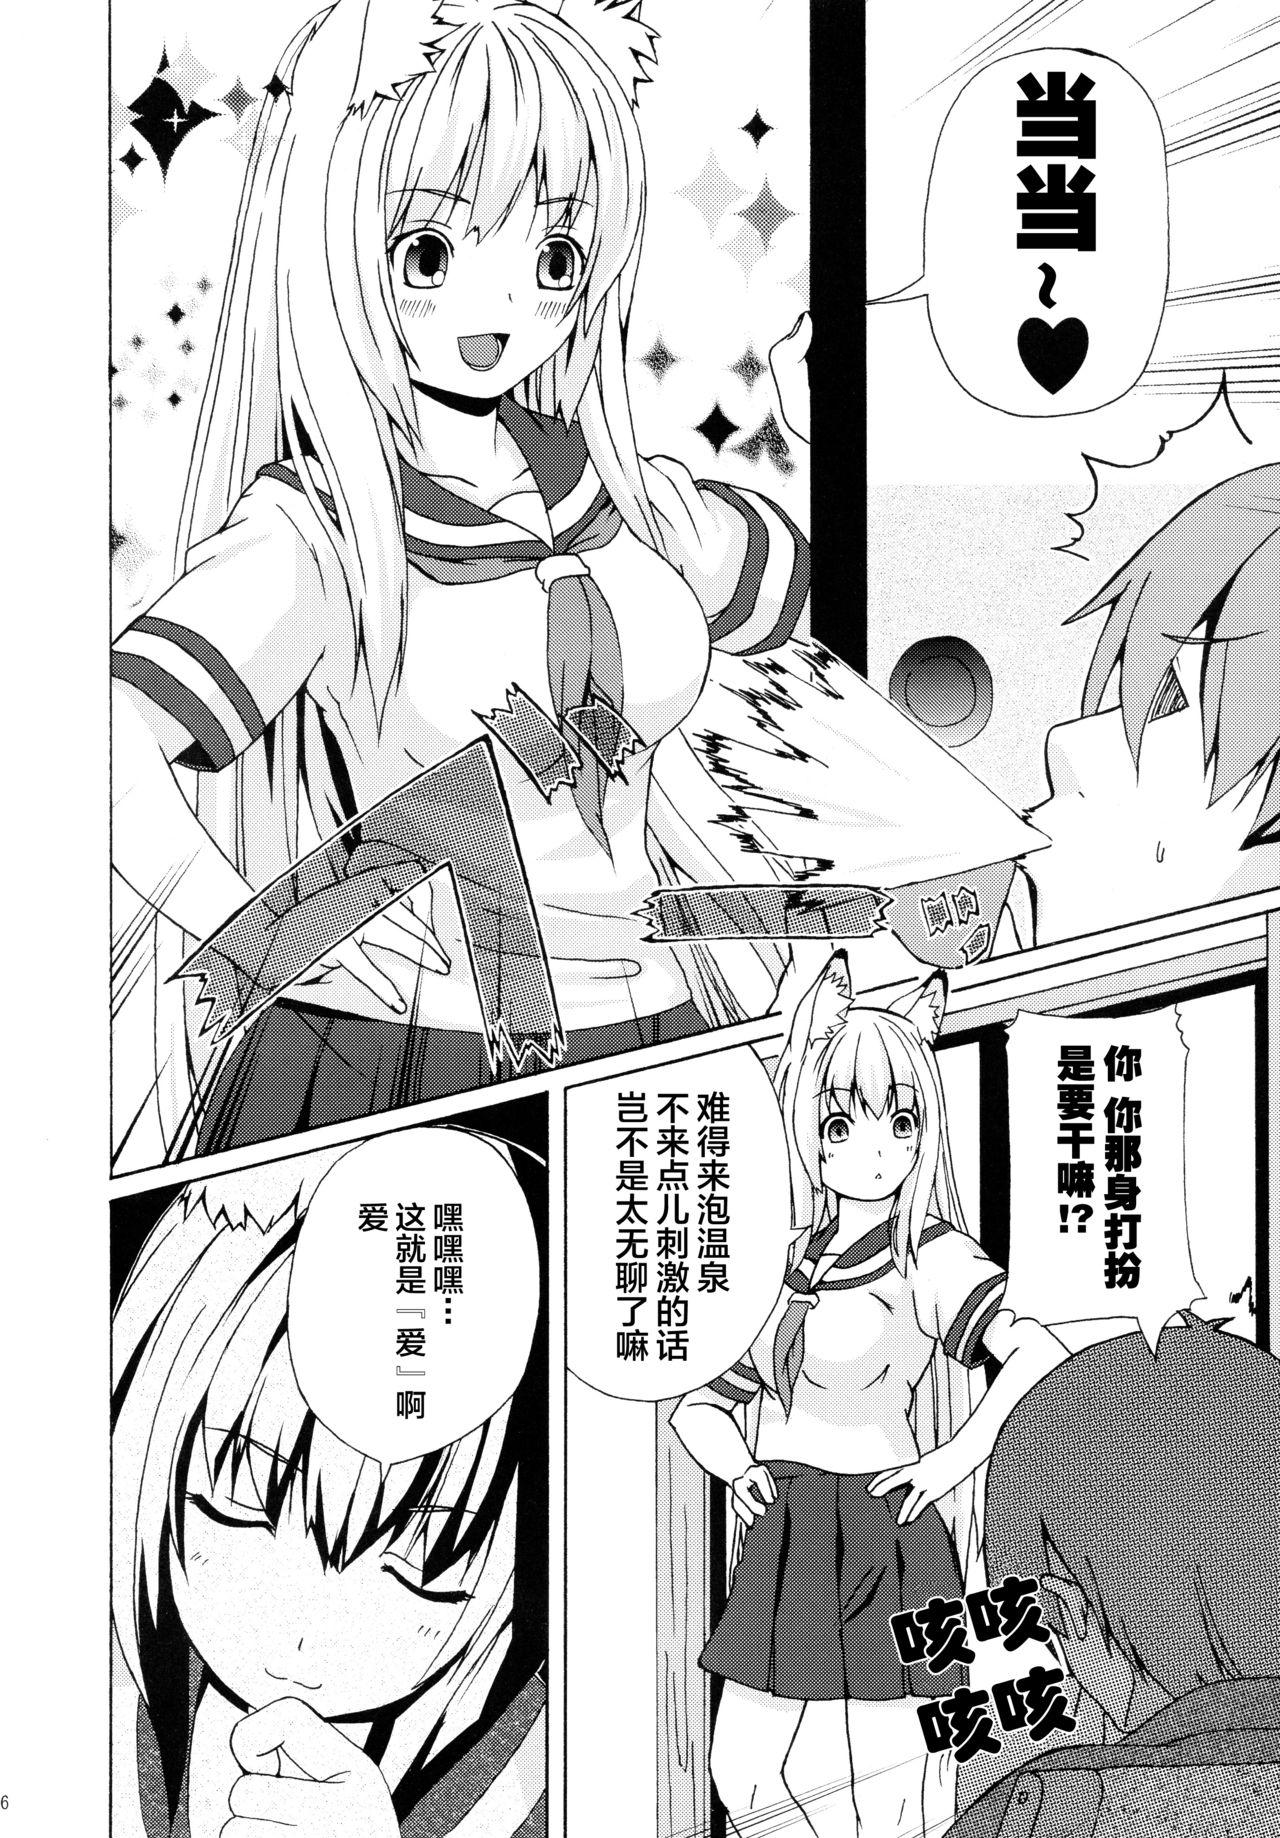 Strange Hare, Tokidoki Oinari-sama 3 - Wagaya no oinari-sama Cheerleader - Page 6